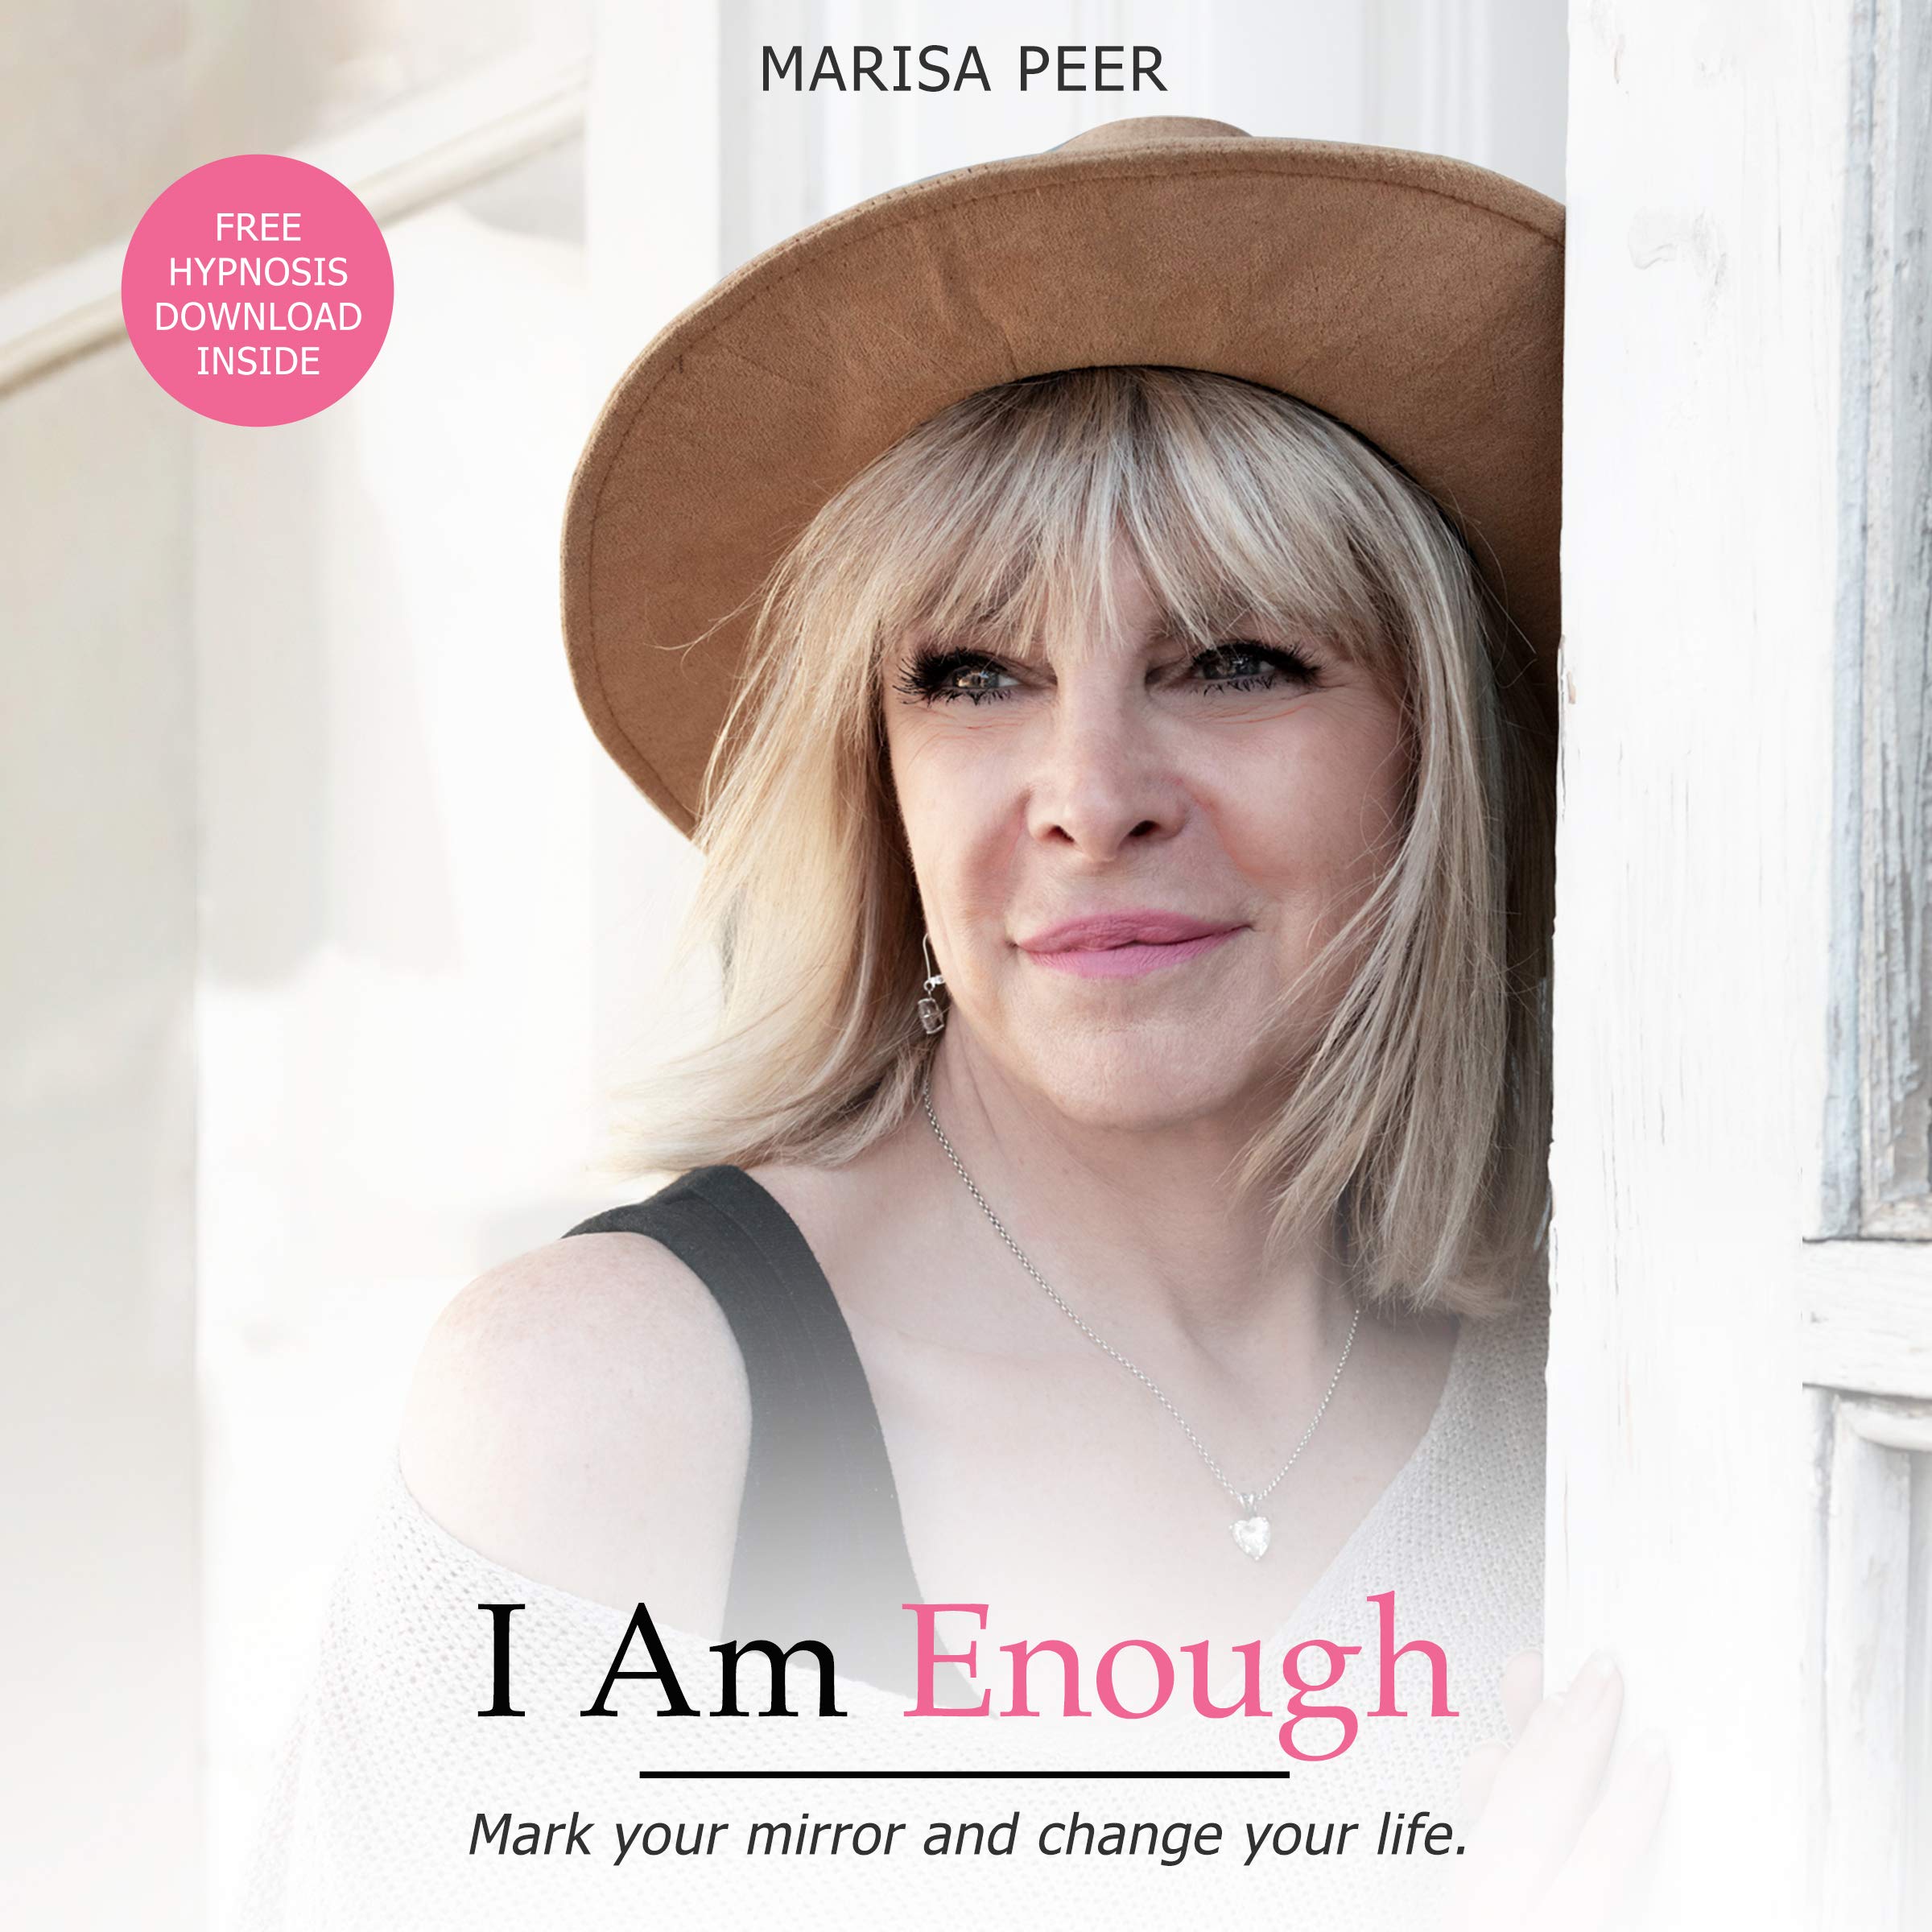 I am enough Marisa peer. L am enough